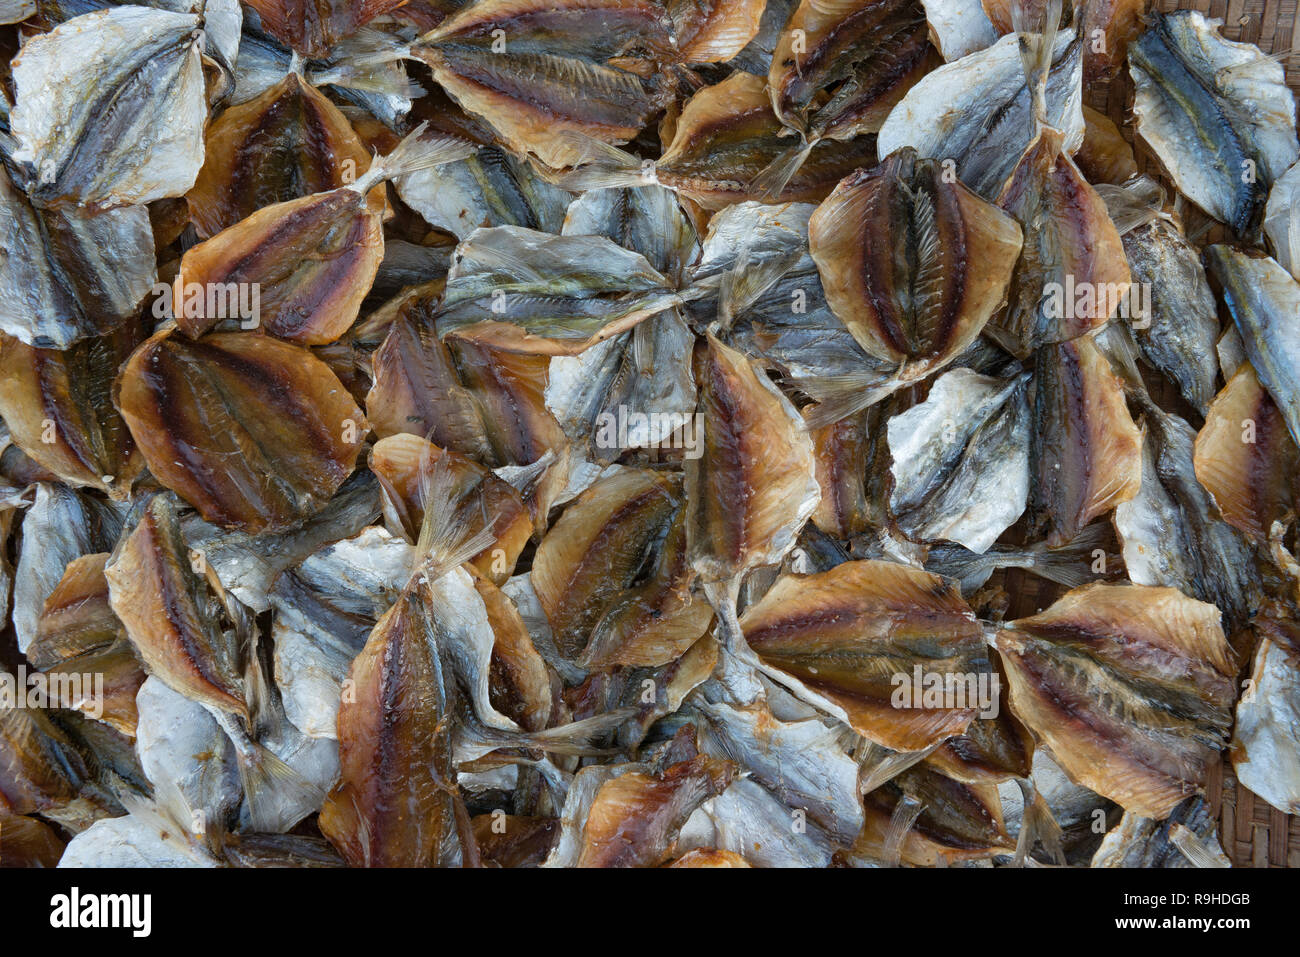 Pequeños peces secos para la venta en el sur de Tailandia, bueno para freír. Foto de stock